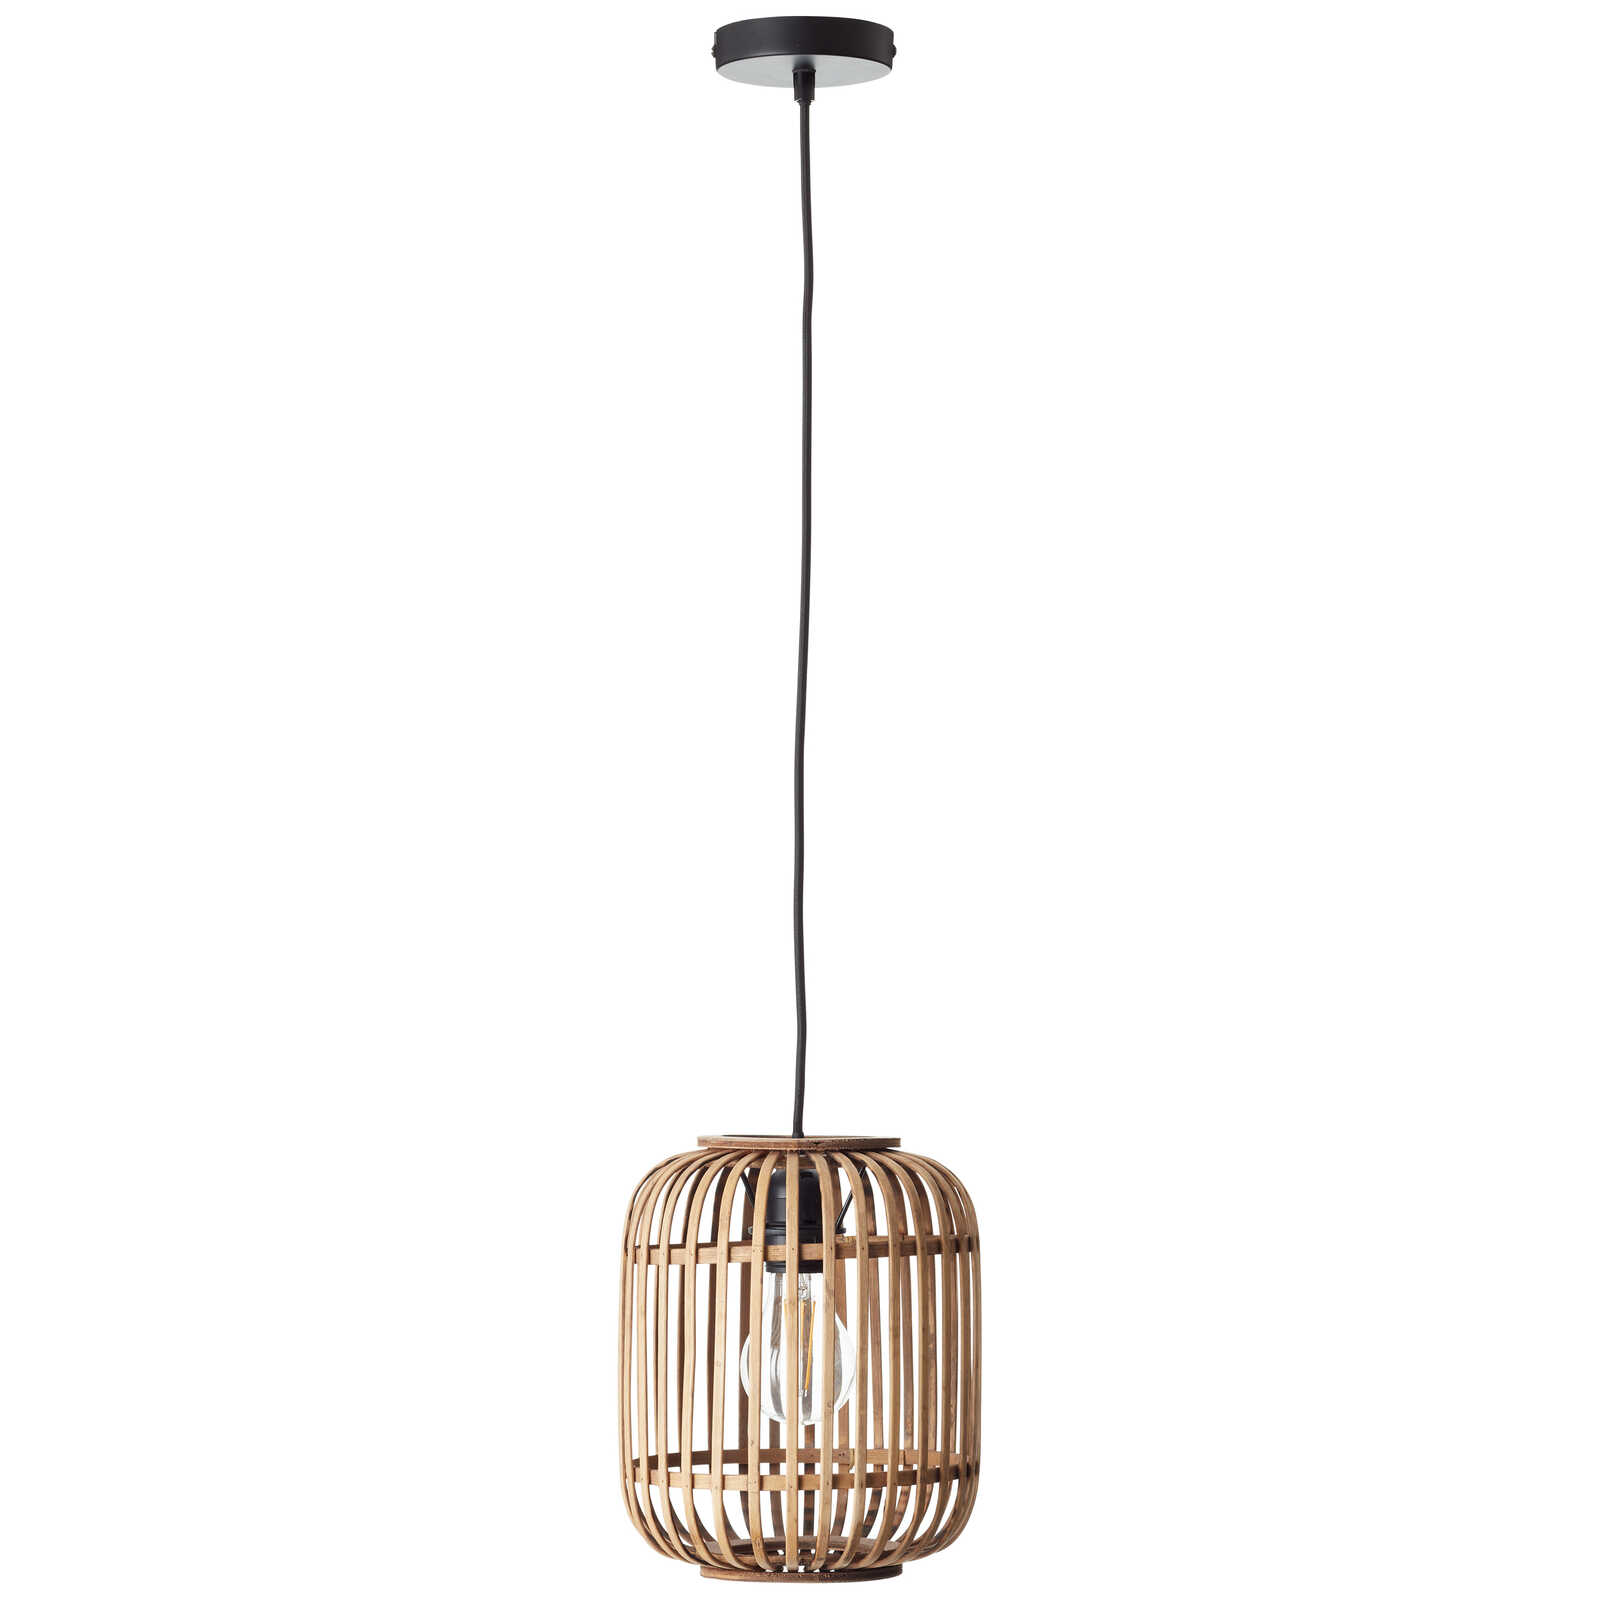             Metalen hanglamp - Willi 16 - Bruin
        